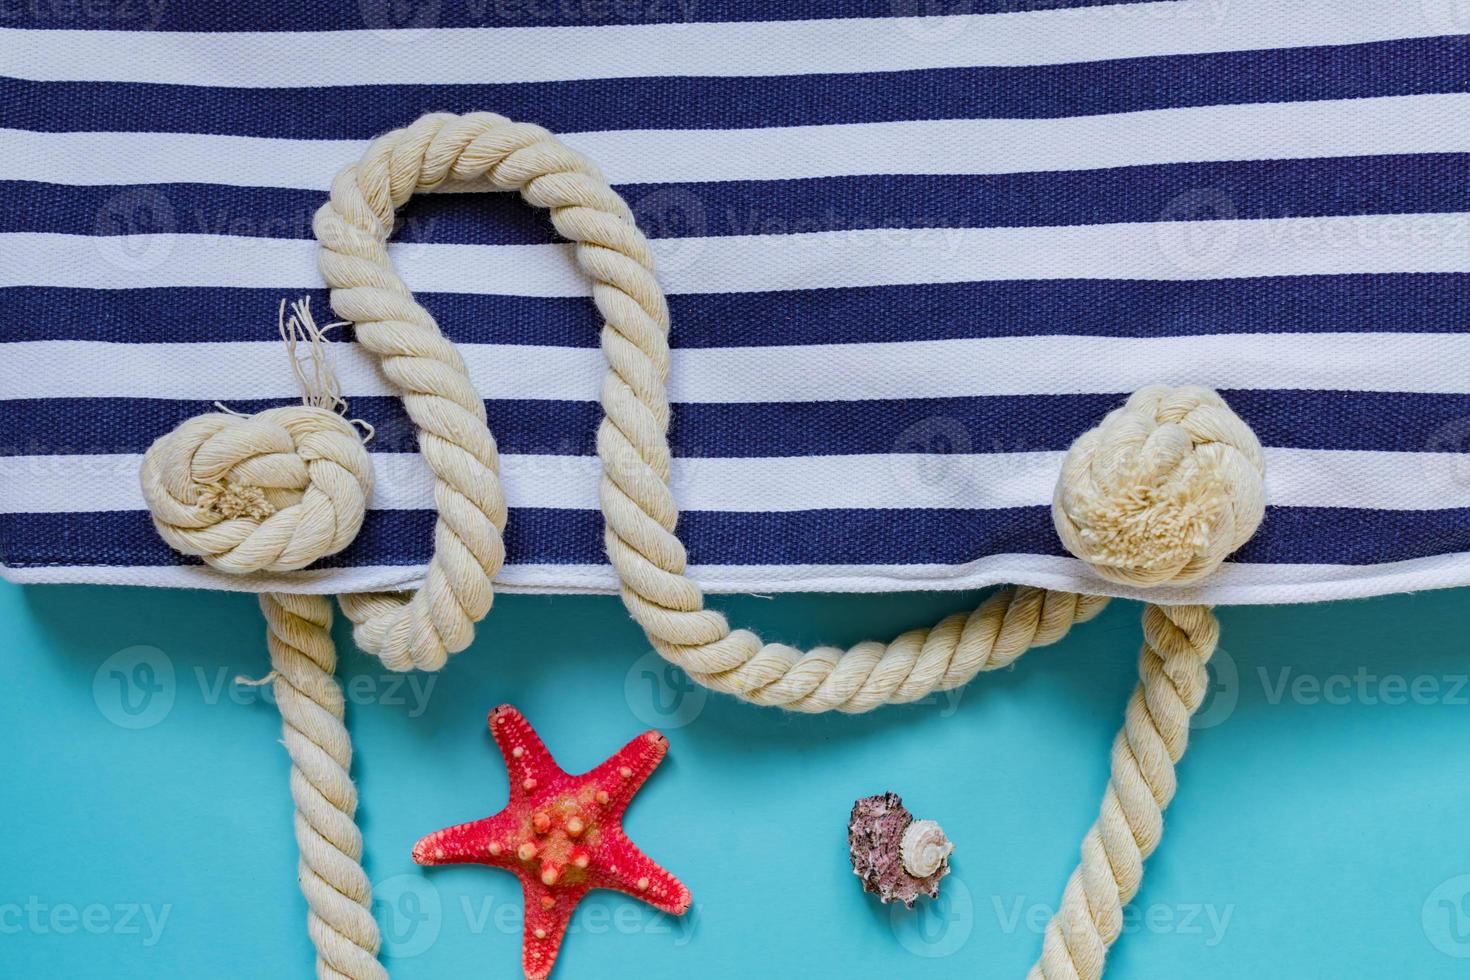 muscheln, seesterne und stoff gestreifte marinetasche mit seilknoten auf hellblauem hintergrund. sommerferien- und urlaubskonzept foto